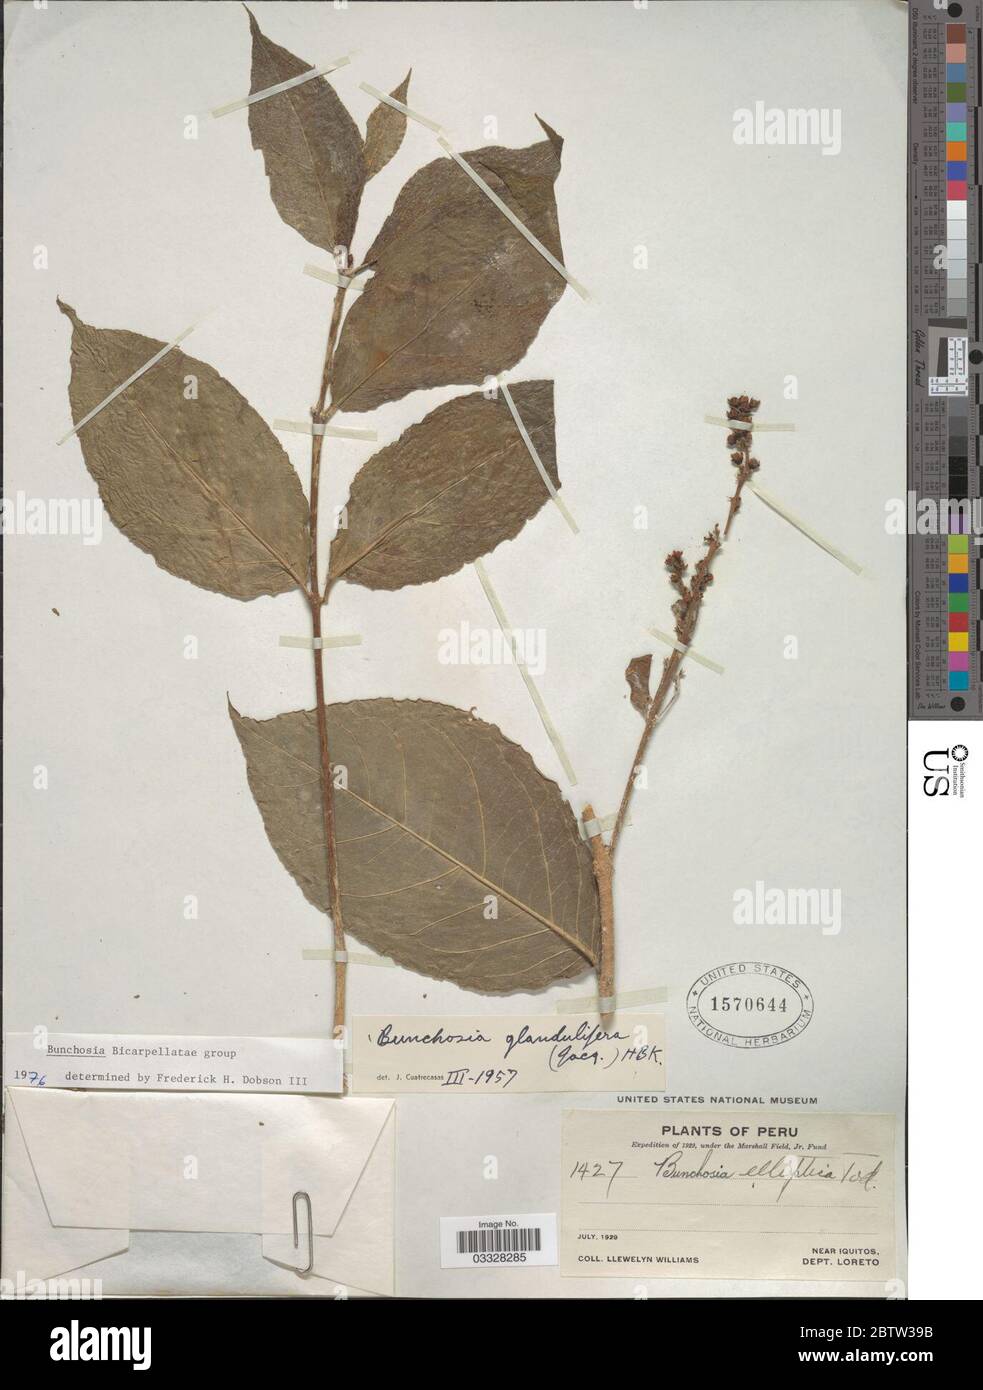 Bunchosia glandulifera Jacq Kunth. 12 Jul 20191 Stock Photo